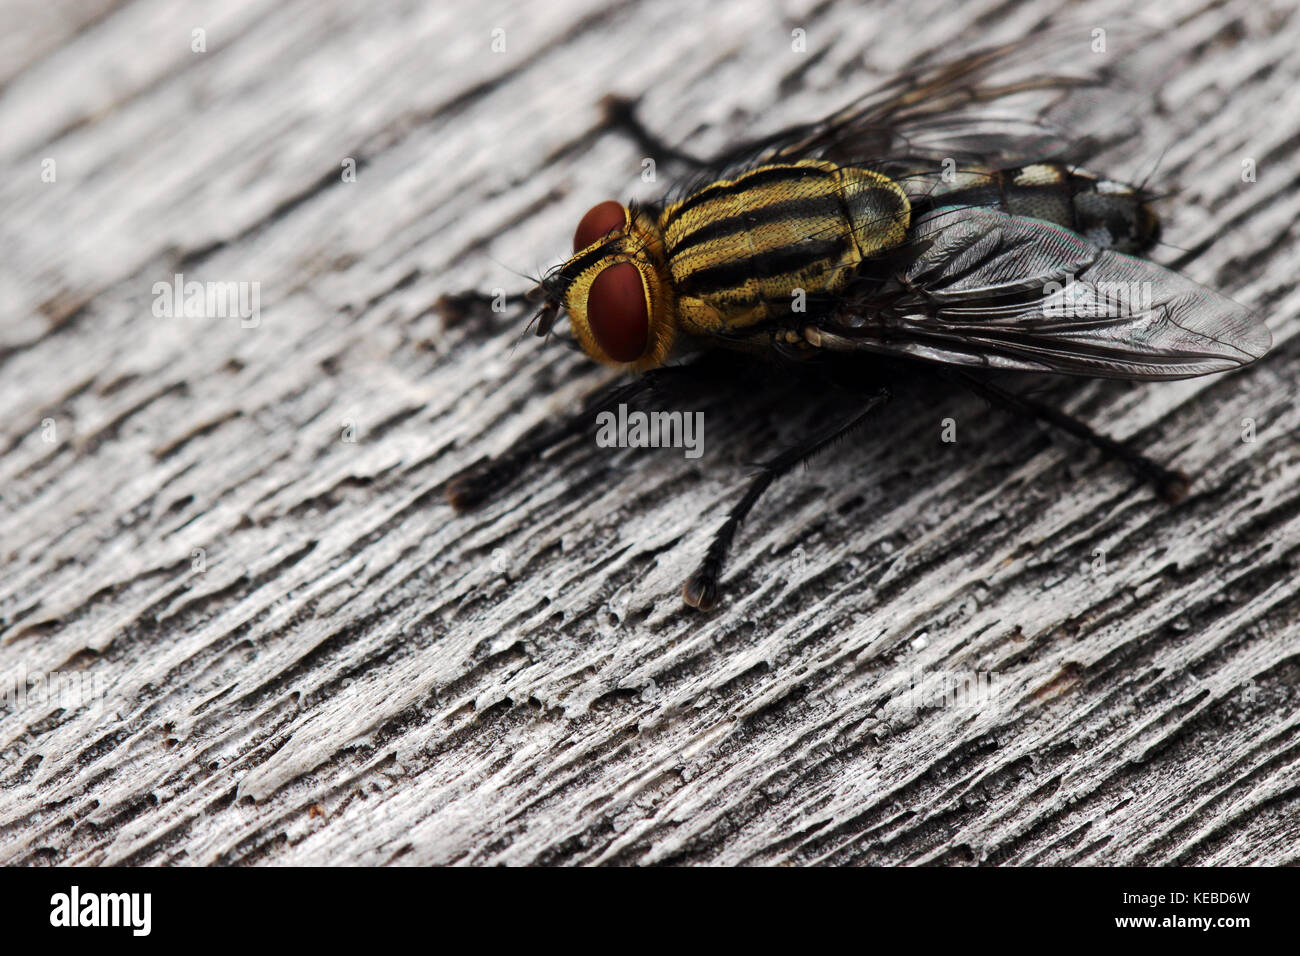 Flesh fly sitting on wood Stock Photo